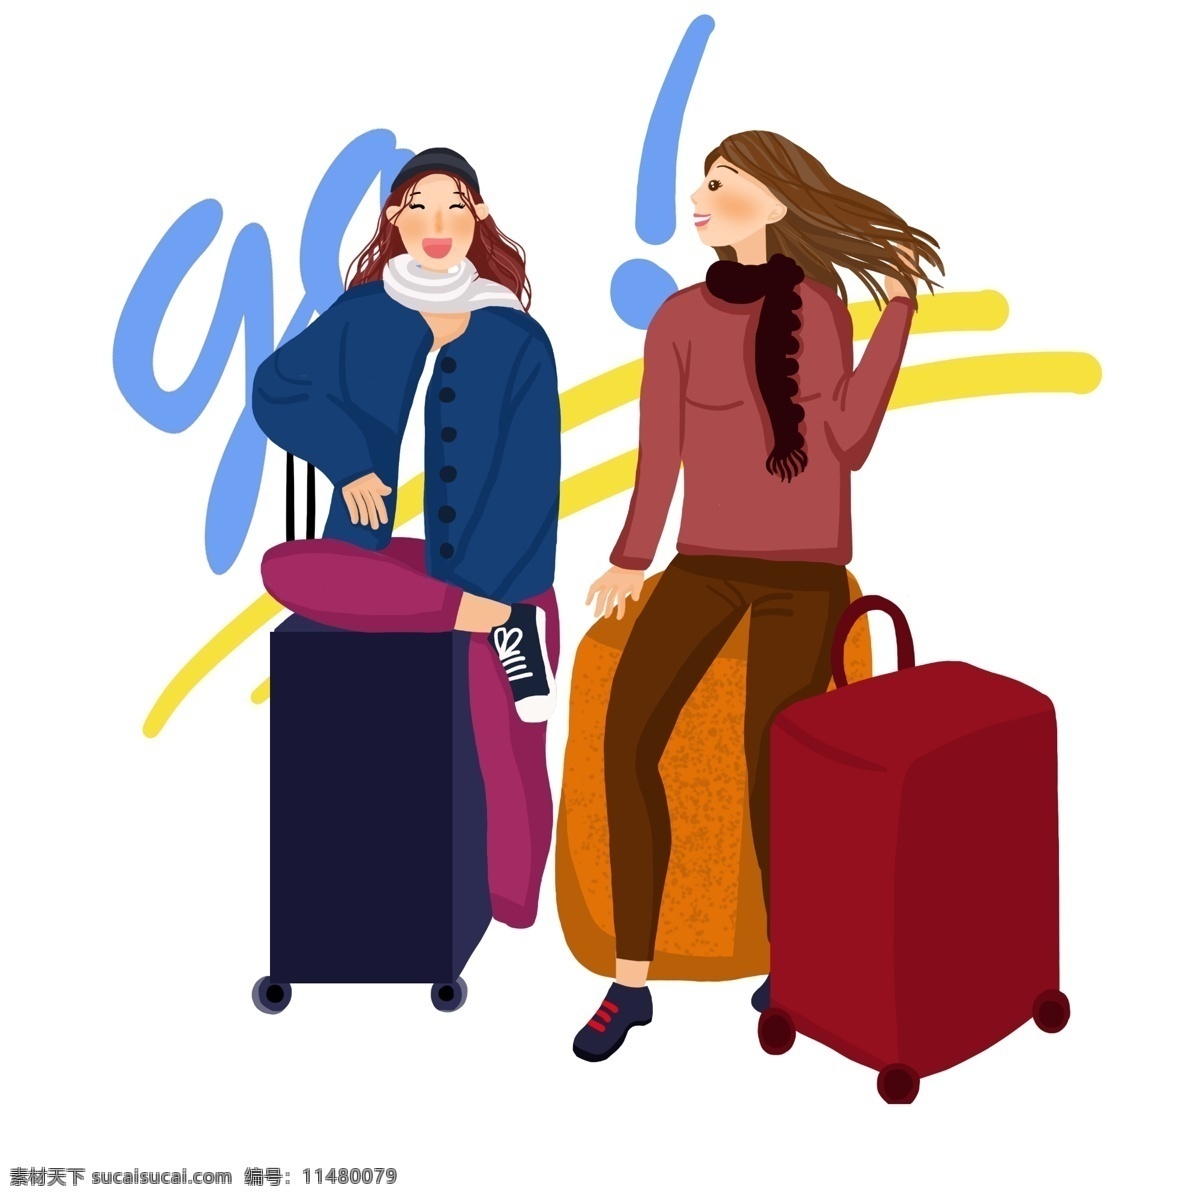 冬季 旅行 人物 行李 插画 漂亮的小女孩 旅行的小女孩 卡通人物插画 结伴旅行 红色的行李箱